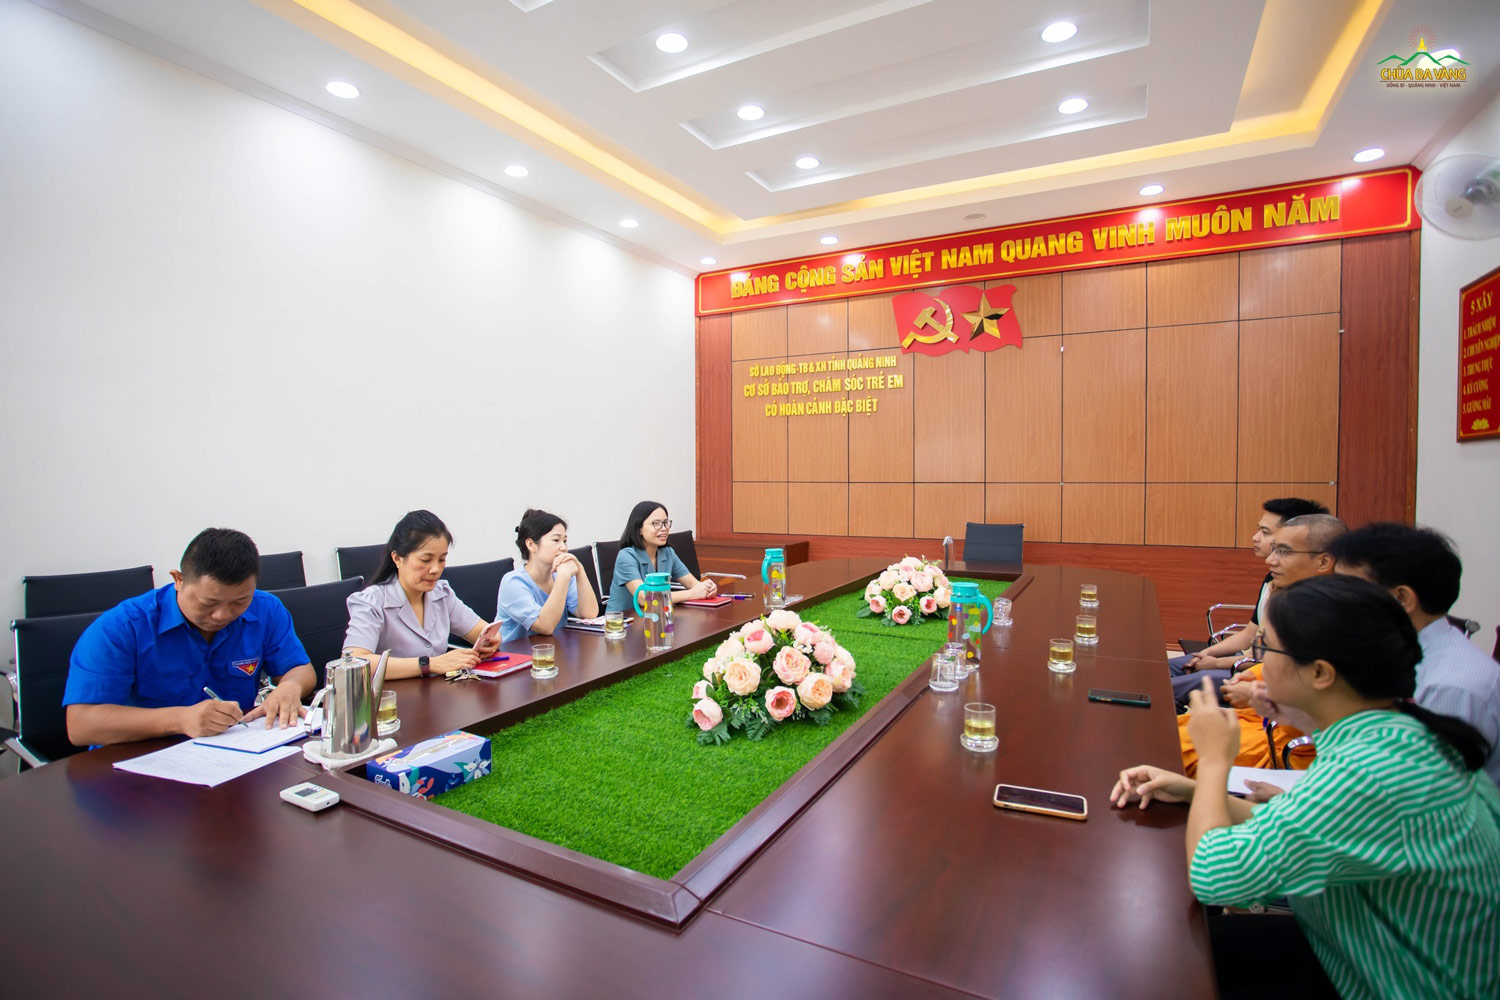 Trước đó, đại diện lãnh đạo Cơ sở bảo trợ chăm sóc trẻ em có hoàn cảnh đặc biệt tỉnh Quảng Ninh đã có buổi làm việc với đại diện chùa Ba Vàng về kế hoạch thi công công trình